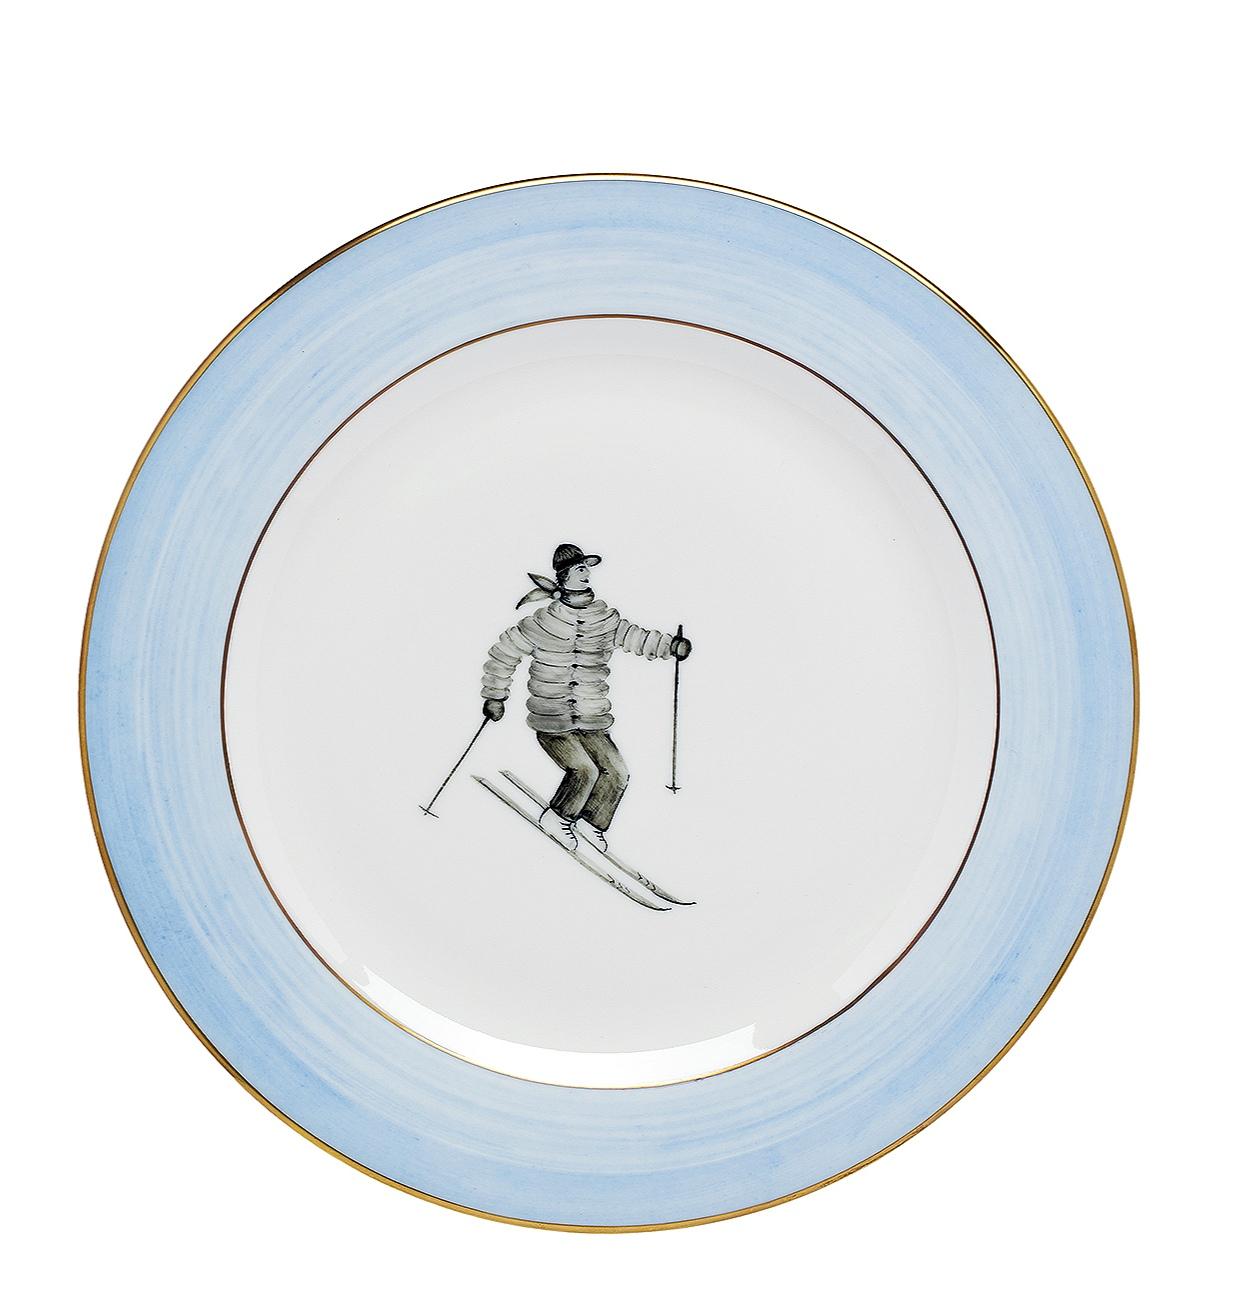 Satz von sechs vollständig handgefertigten und handbemalten Porzellan-Suppentellern mit Unterglasur. Das Dekor zeigt ein graues Skifahrer-Dekor im Landhausstil mit einer blauen Freihandlinie und 24-karätigem Goldrand.
Das Bild ist spülmaschinenfest,